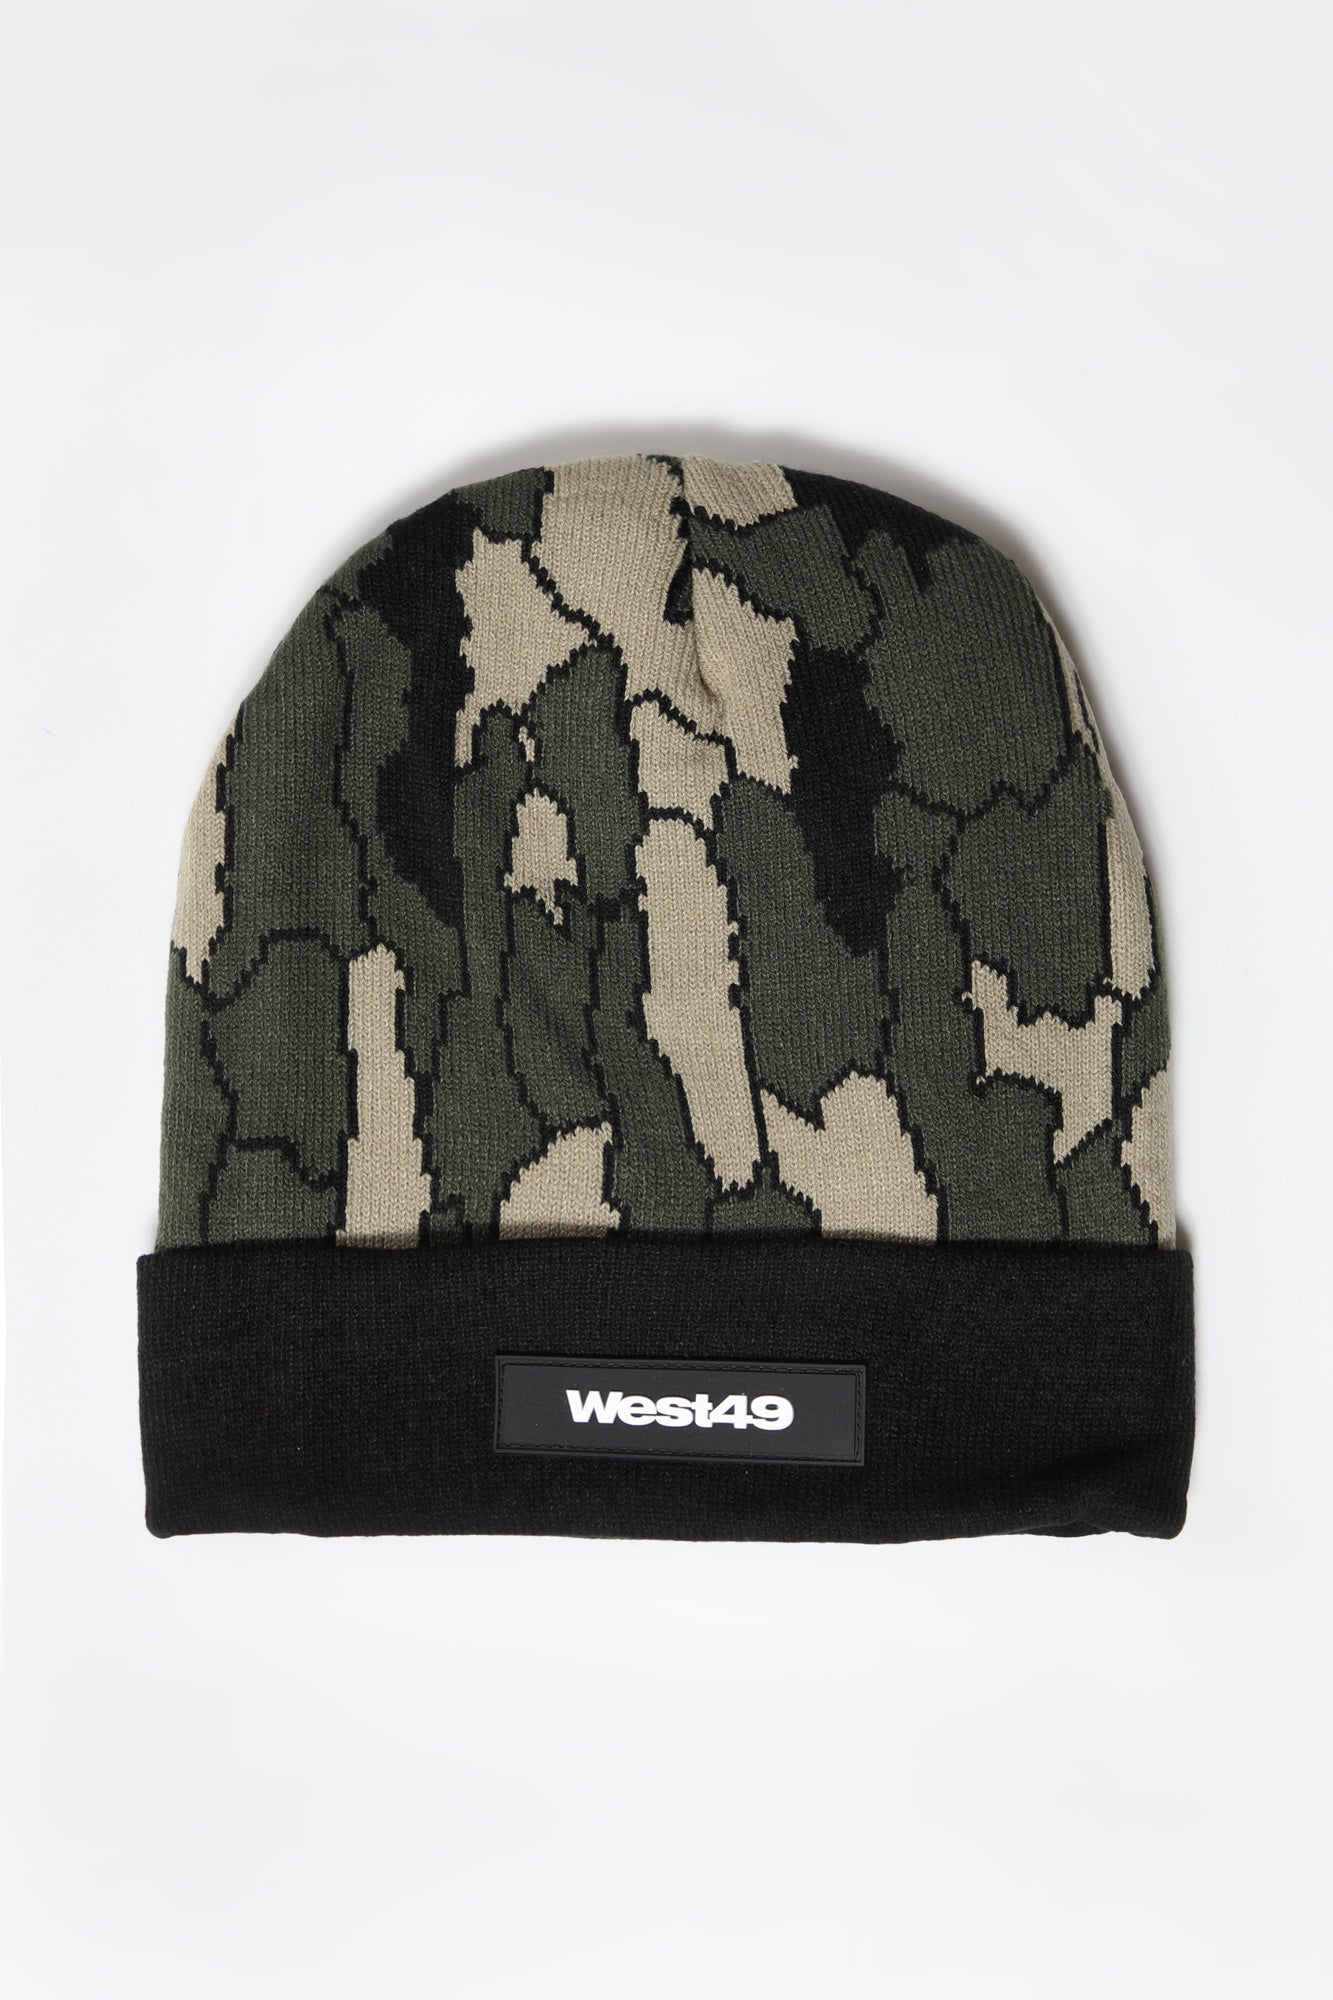 West49 Mens Mountain Camo Foldup Beanie - Camouflage / O/S